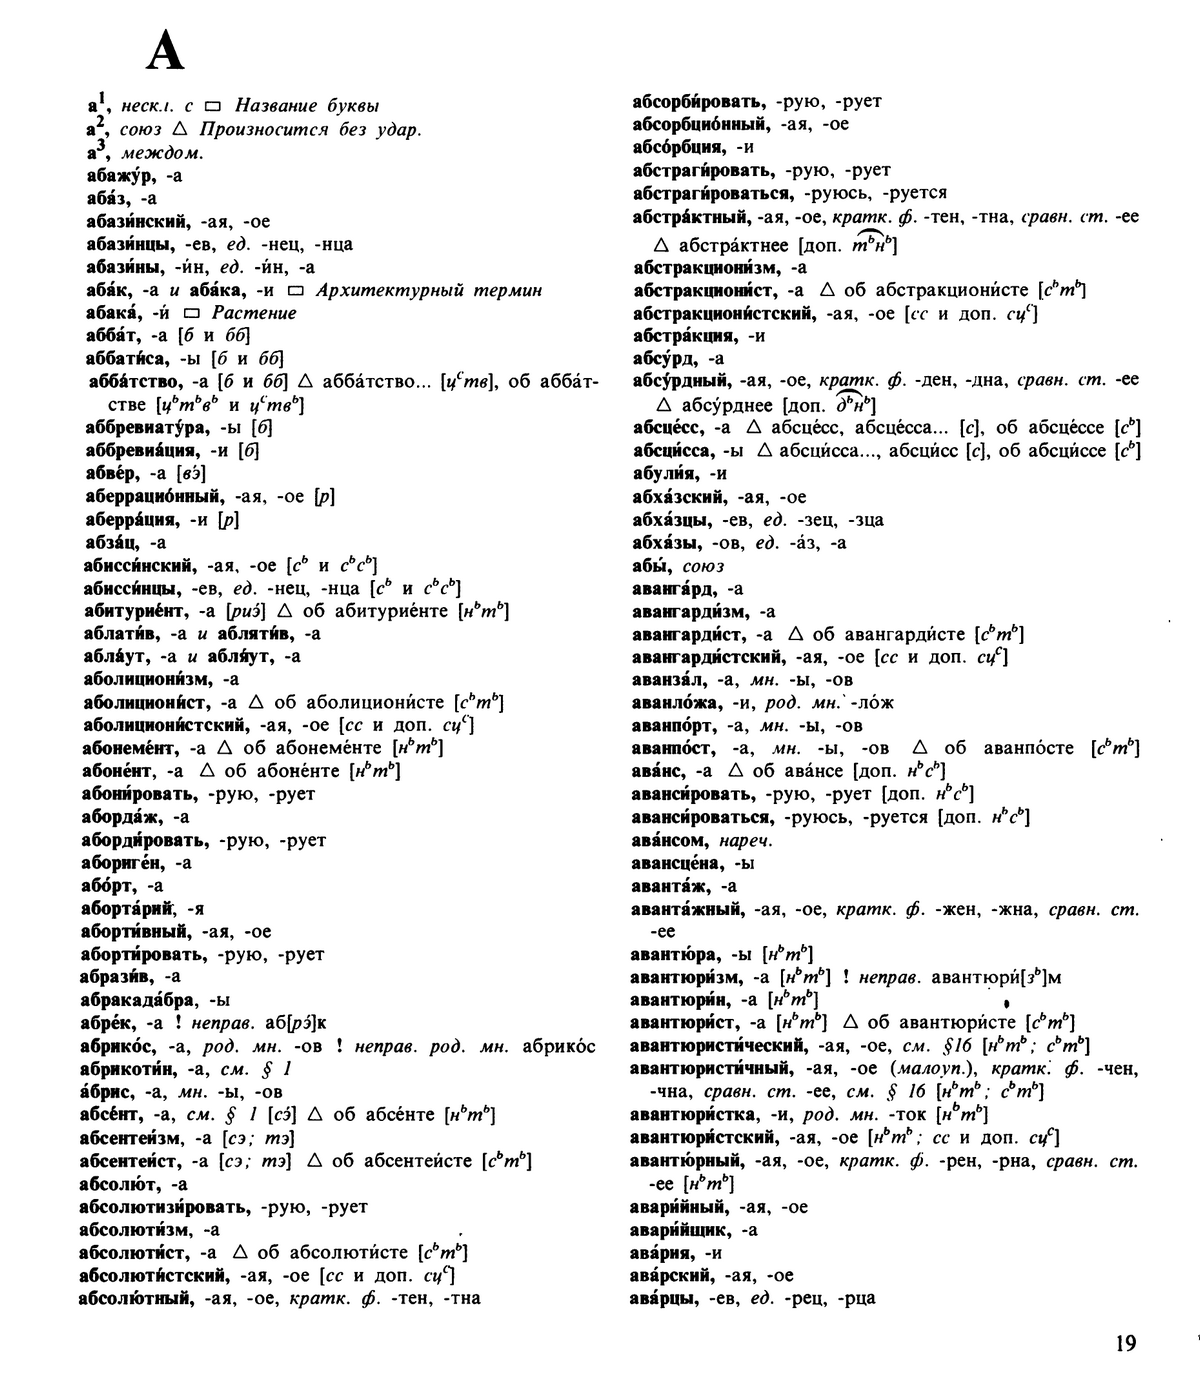 Фотокопия pdf / скан страницы 19 орфоэпического словаря под редакцией Аванесова (5 издание, 1989 год)